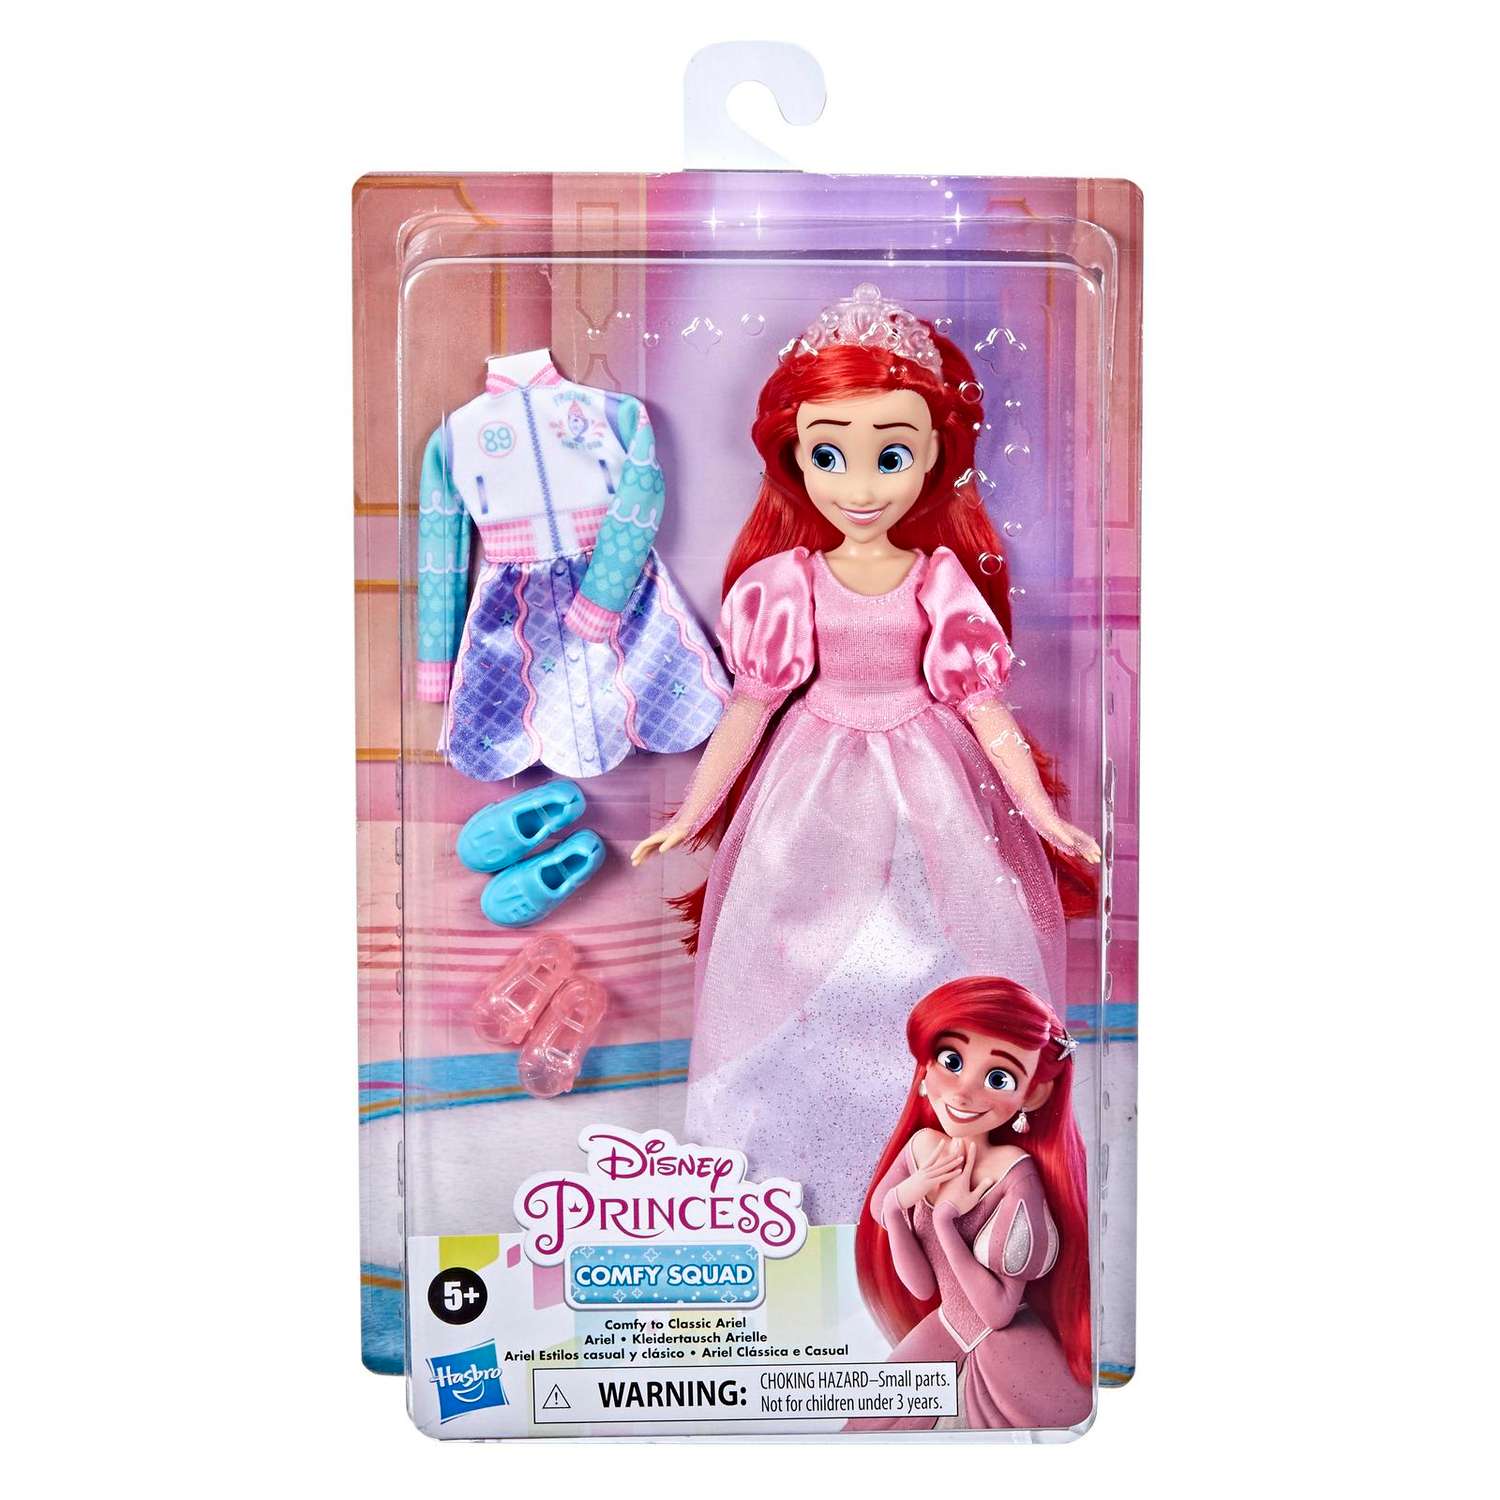 Кукла Disney Princess Disney Princess Hasbro Комфи Ариэль 2наряда F23665X0 F23665X0 - фото 2